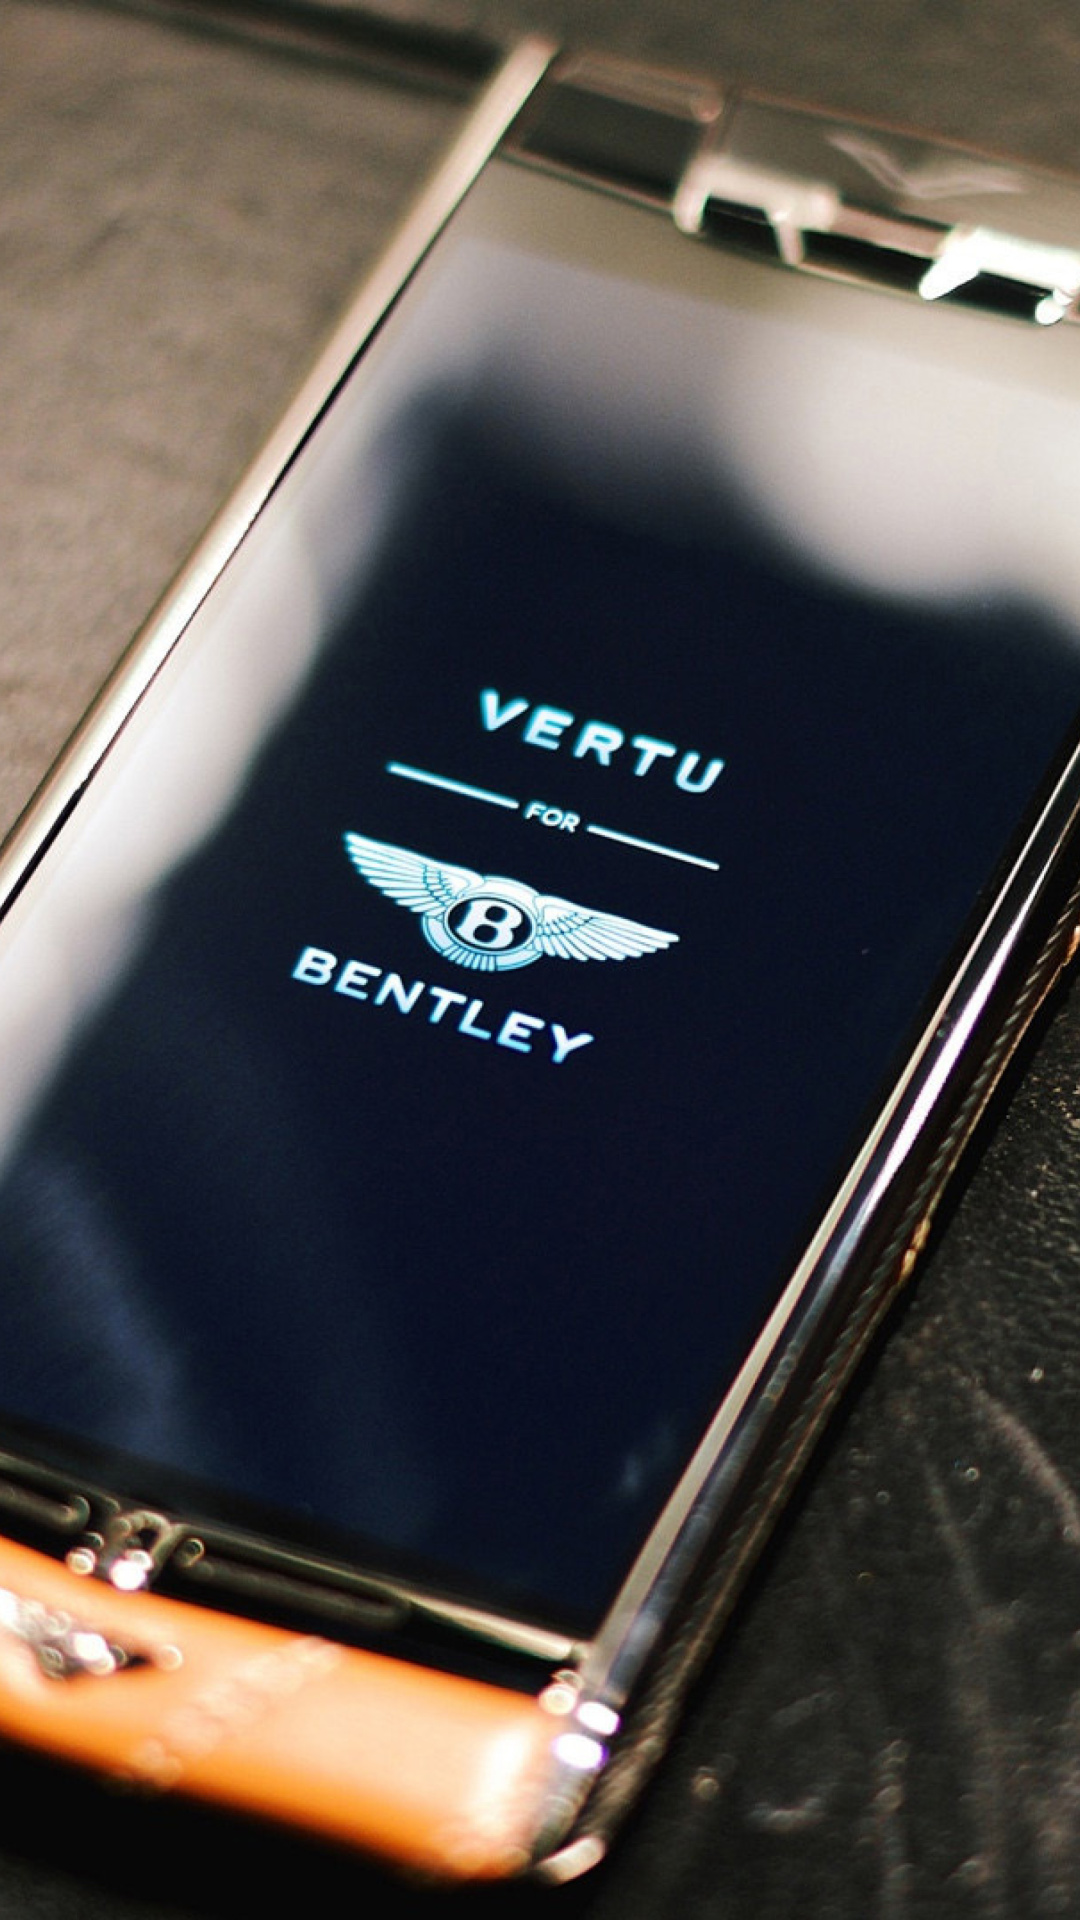 Vertu Bentley screenshot #1 1080x1920